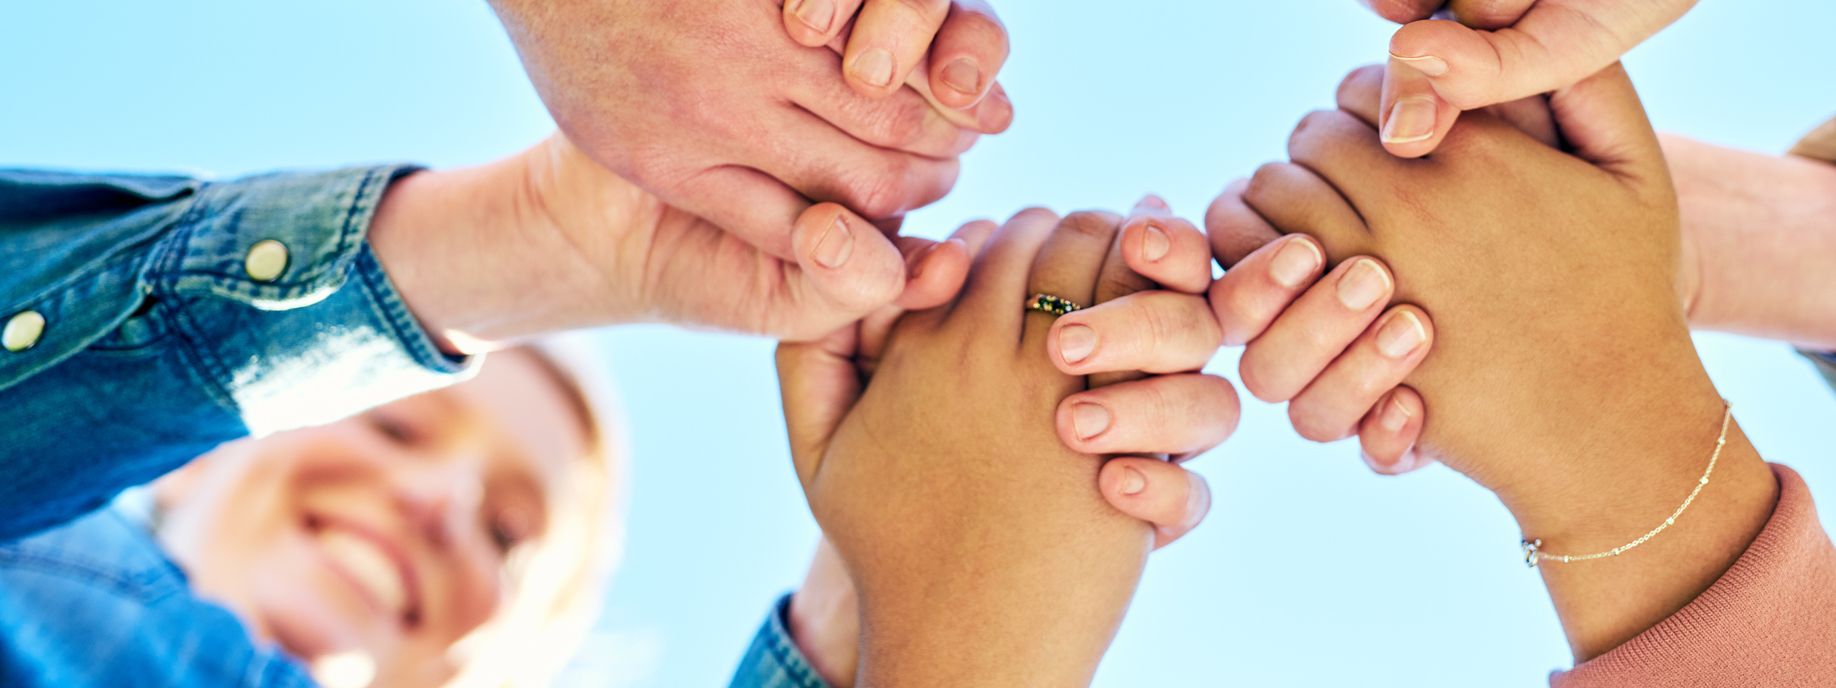 Fünf Menschen stehen eng im Kreis und halten sich fest an den Händen als Geste des Zusammenhalts.